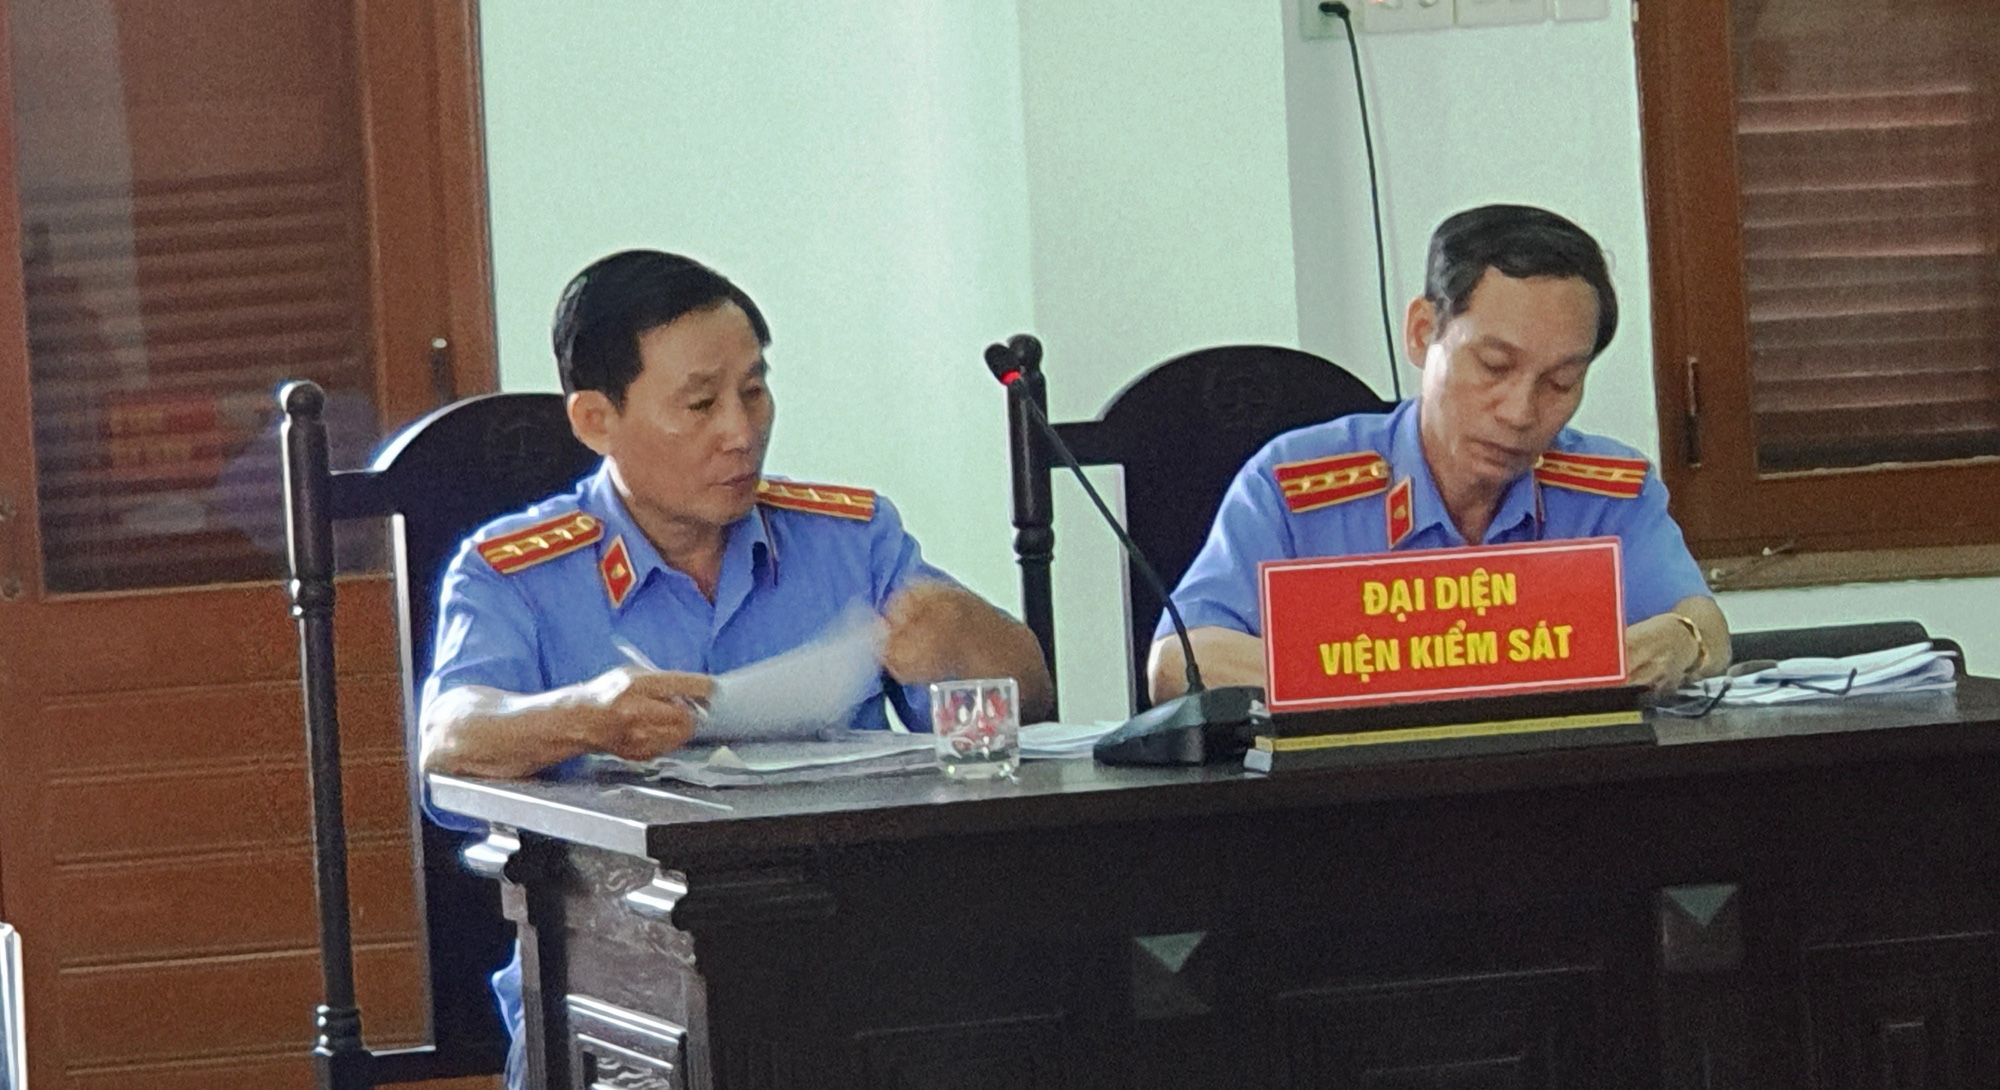 Cựu chánh án Phú Yên đối diện mức án 15 năm 6 tháng - 16 năm tù về tội tham ô - Ảnh 2.